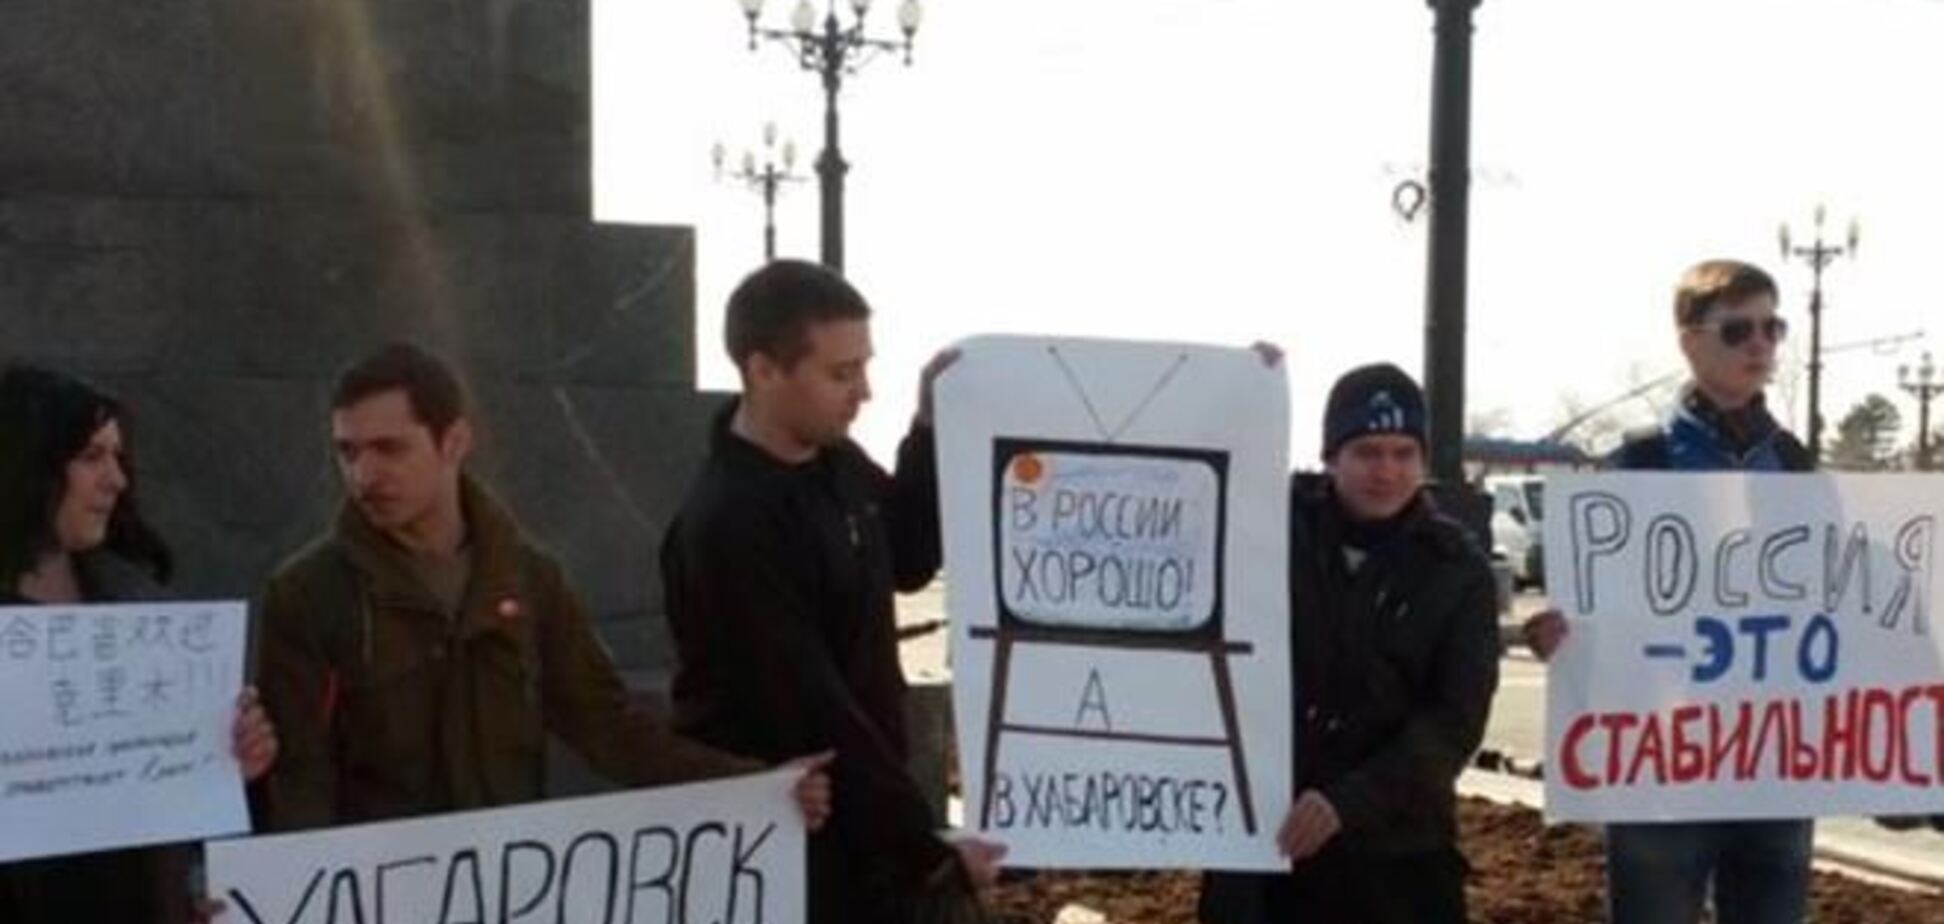 Хабаровск попросил и его 'присоединить' к 'счастливой России'